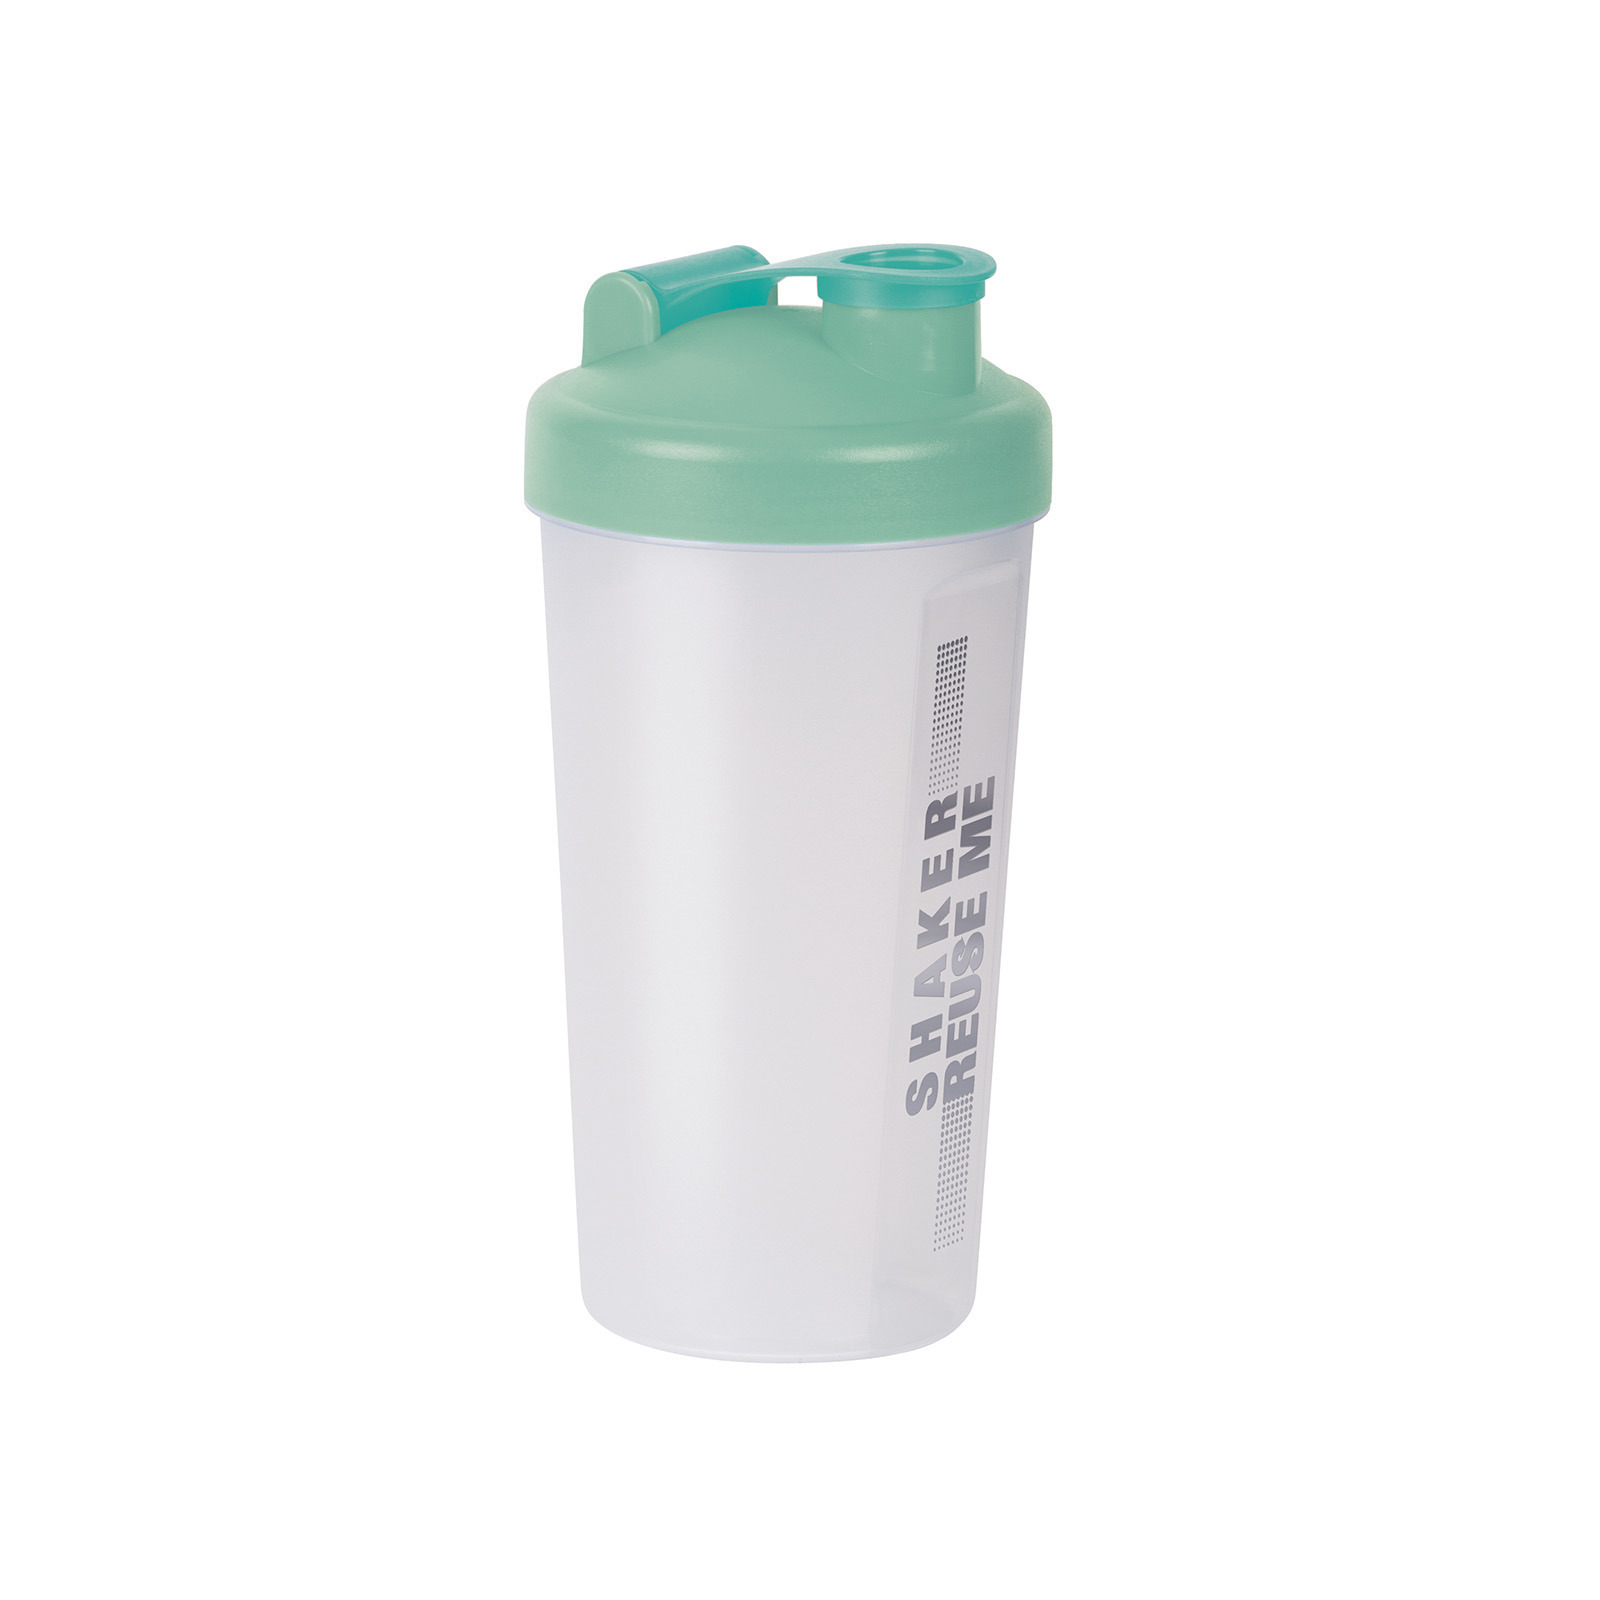 Shakebeker-shaker-bidon 700 ml transparant-groen kunststof